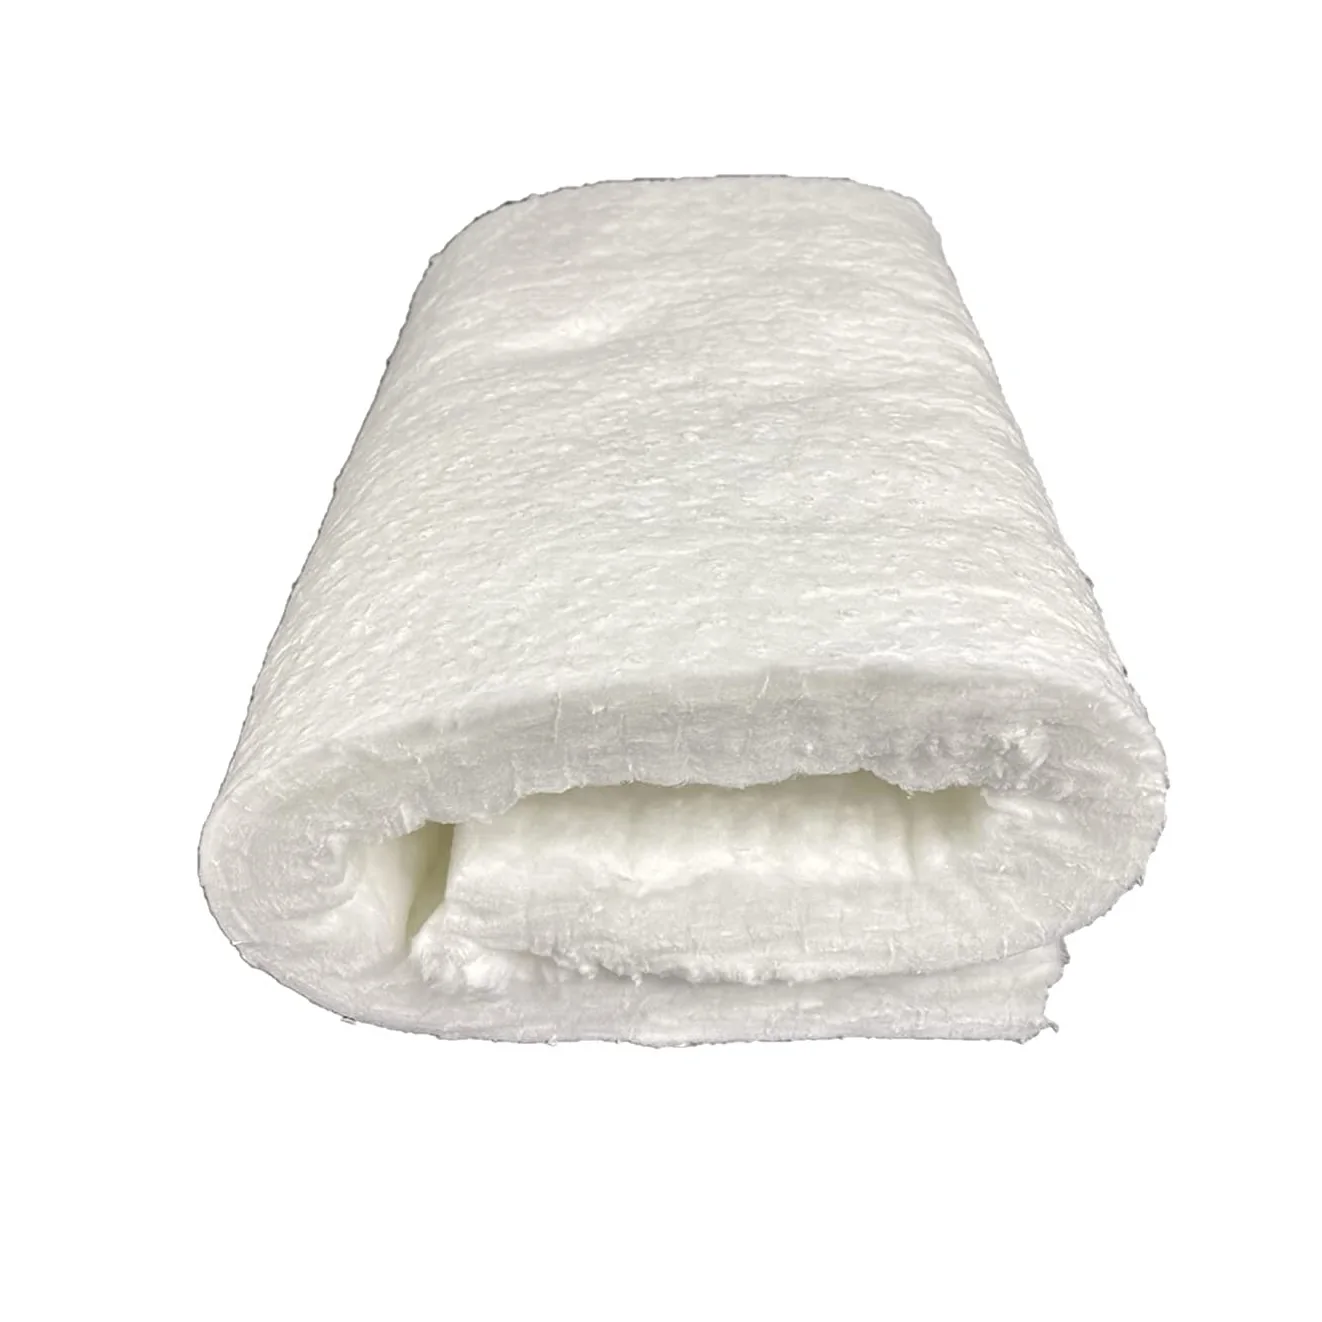 1260 керамическое волокно шерстяное одеяло рулон изоляции Superwool керамическое шерстяное одеяло волокно заводская цена 1260 градусов керамическое волокно